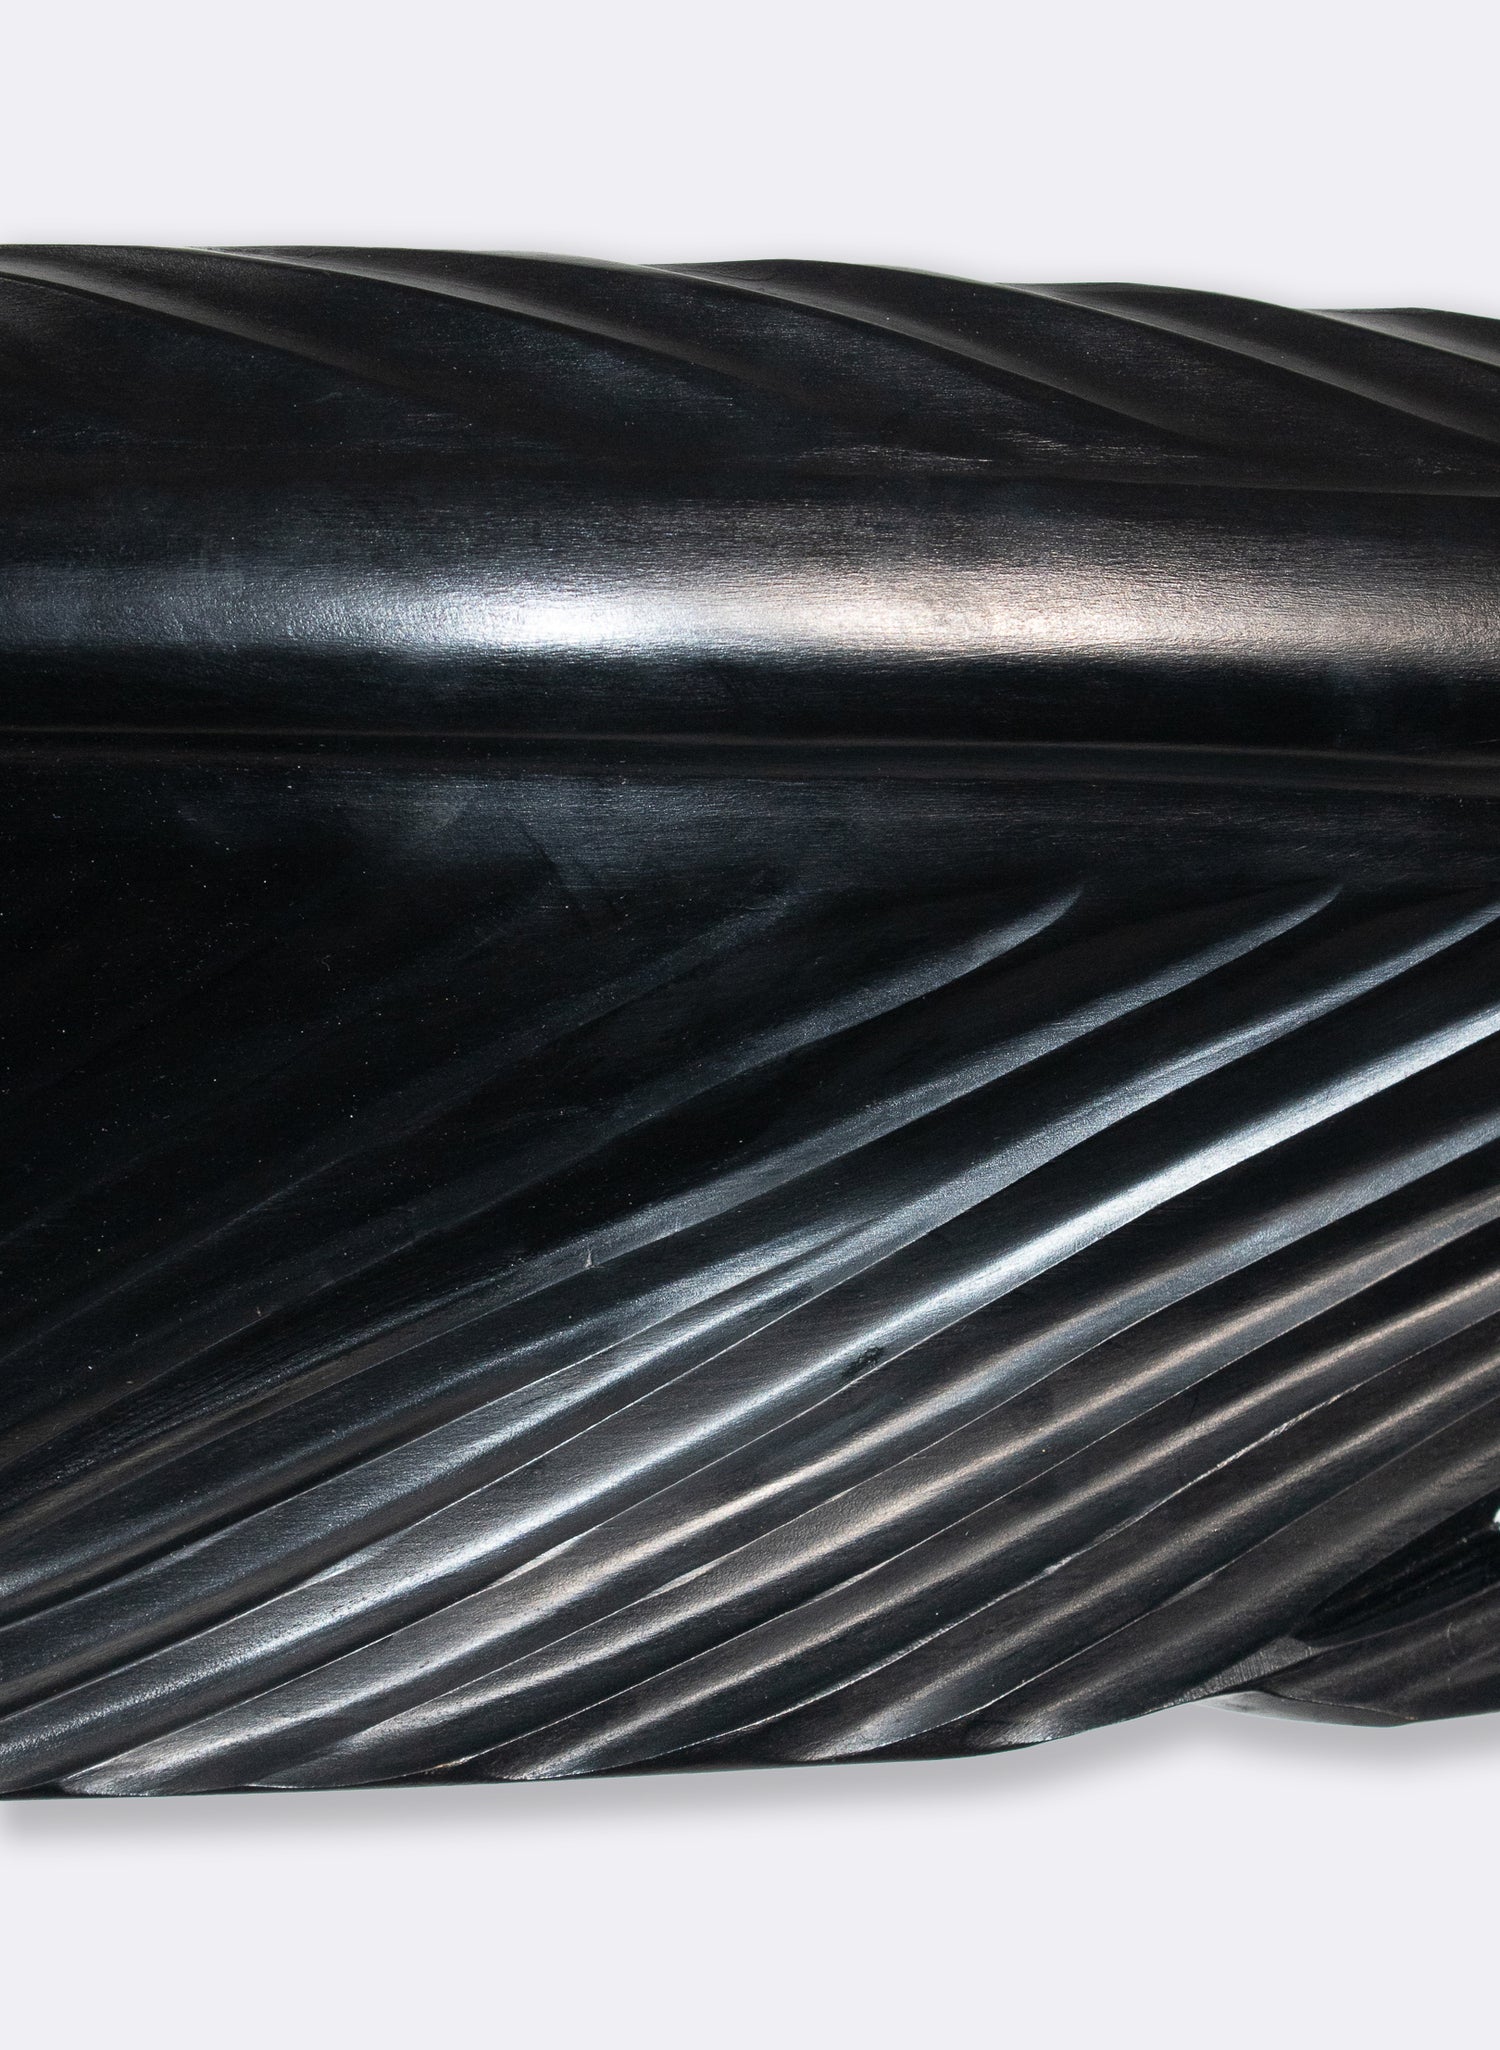 Tui Feather 1750mm - Black Kauri